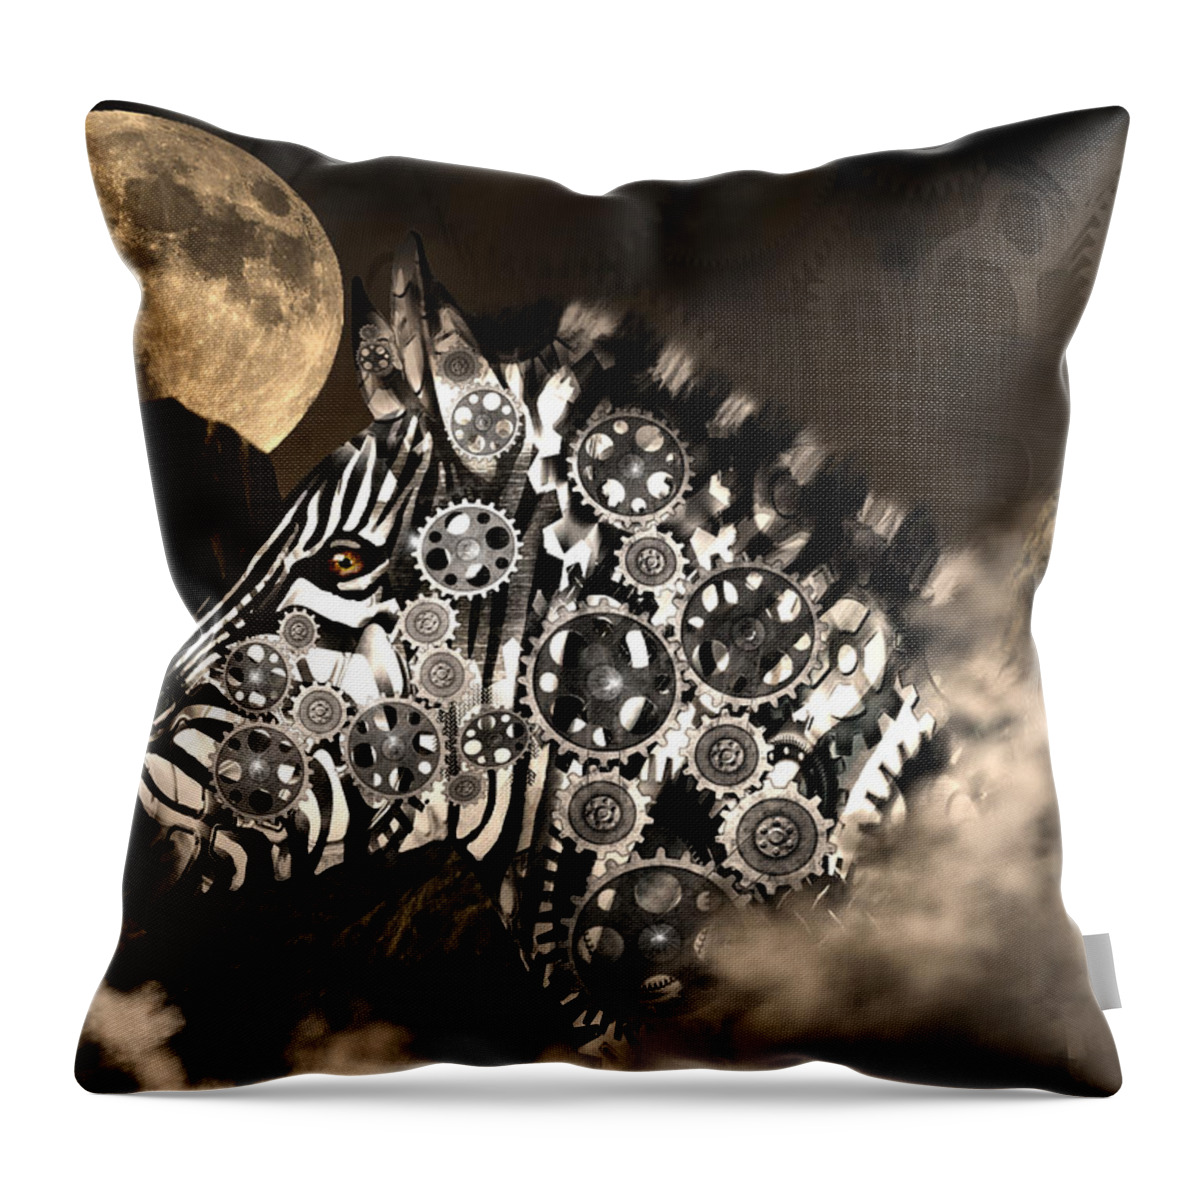 Digital Art Throw Pillow featuring the digital art A Wild Steampunk Zebra by Artful Oasis